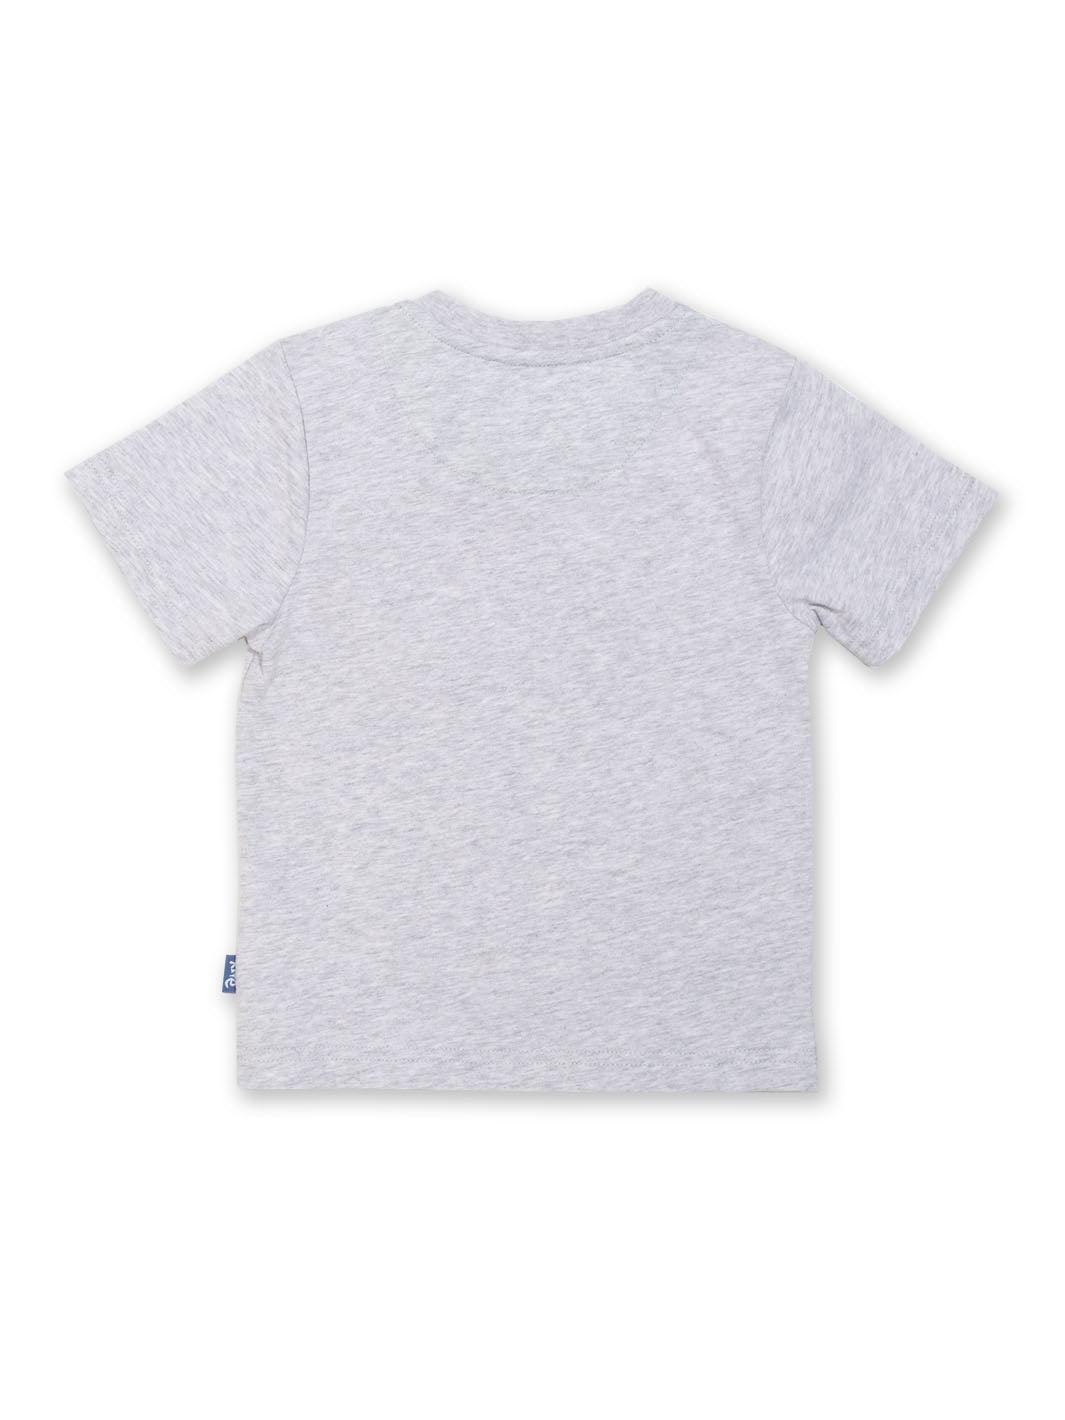 Kite Steggie Short Sleeve T-Shirt - Grey